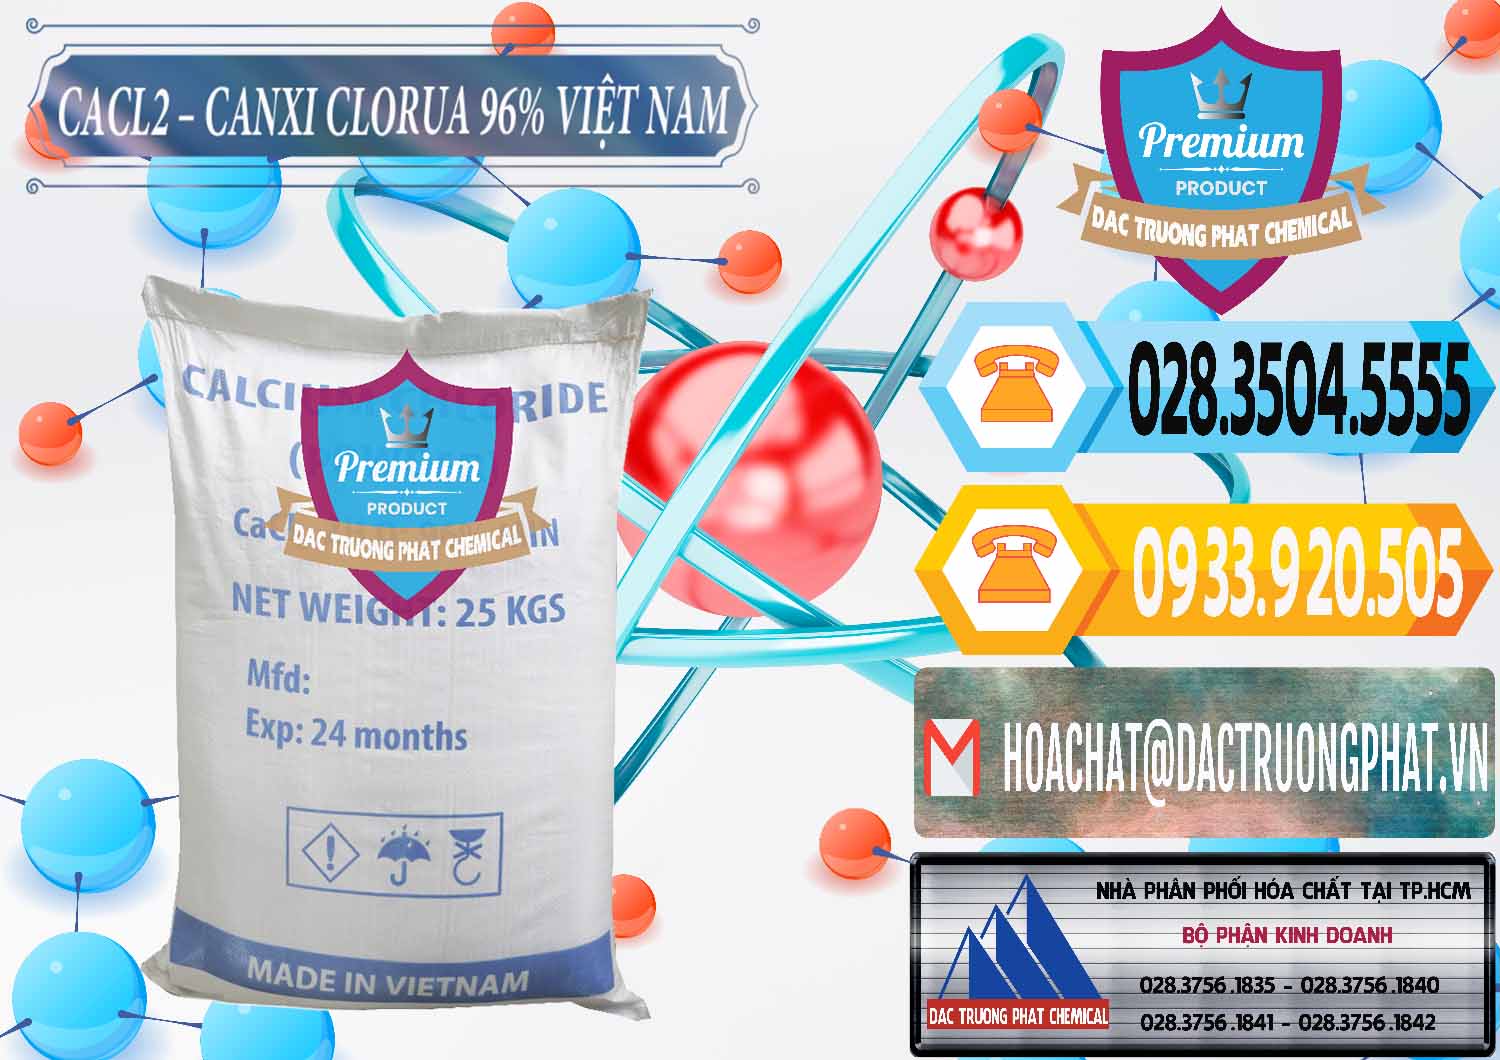 Cty phân phối ( bán ) CaCl2 – Canxi Clorua 96% Việt Nam - 0236 - Cung cấp _ bán hóa chất tại TP.HCM - hoachattayrua.net